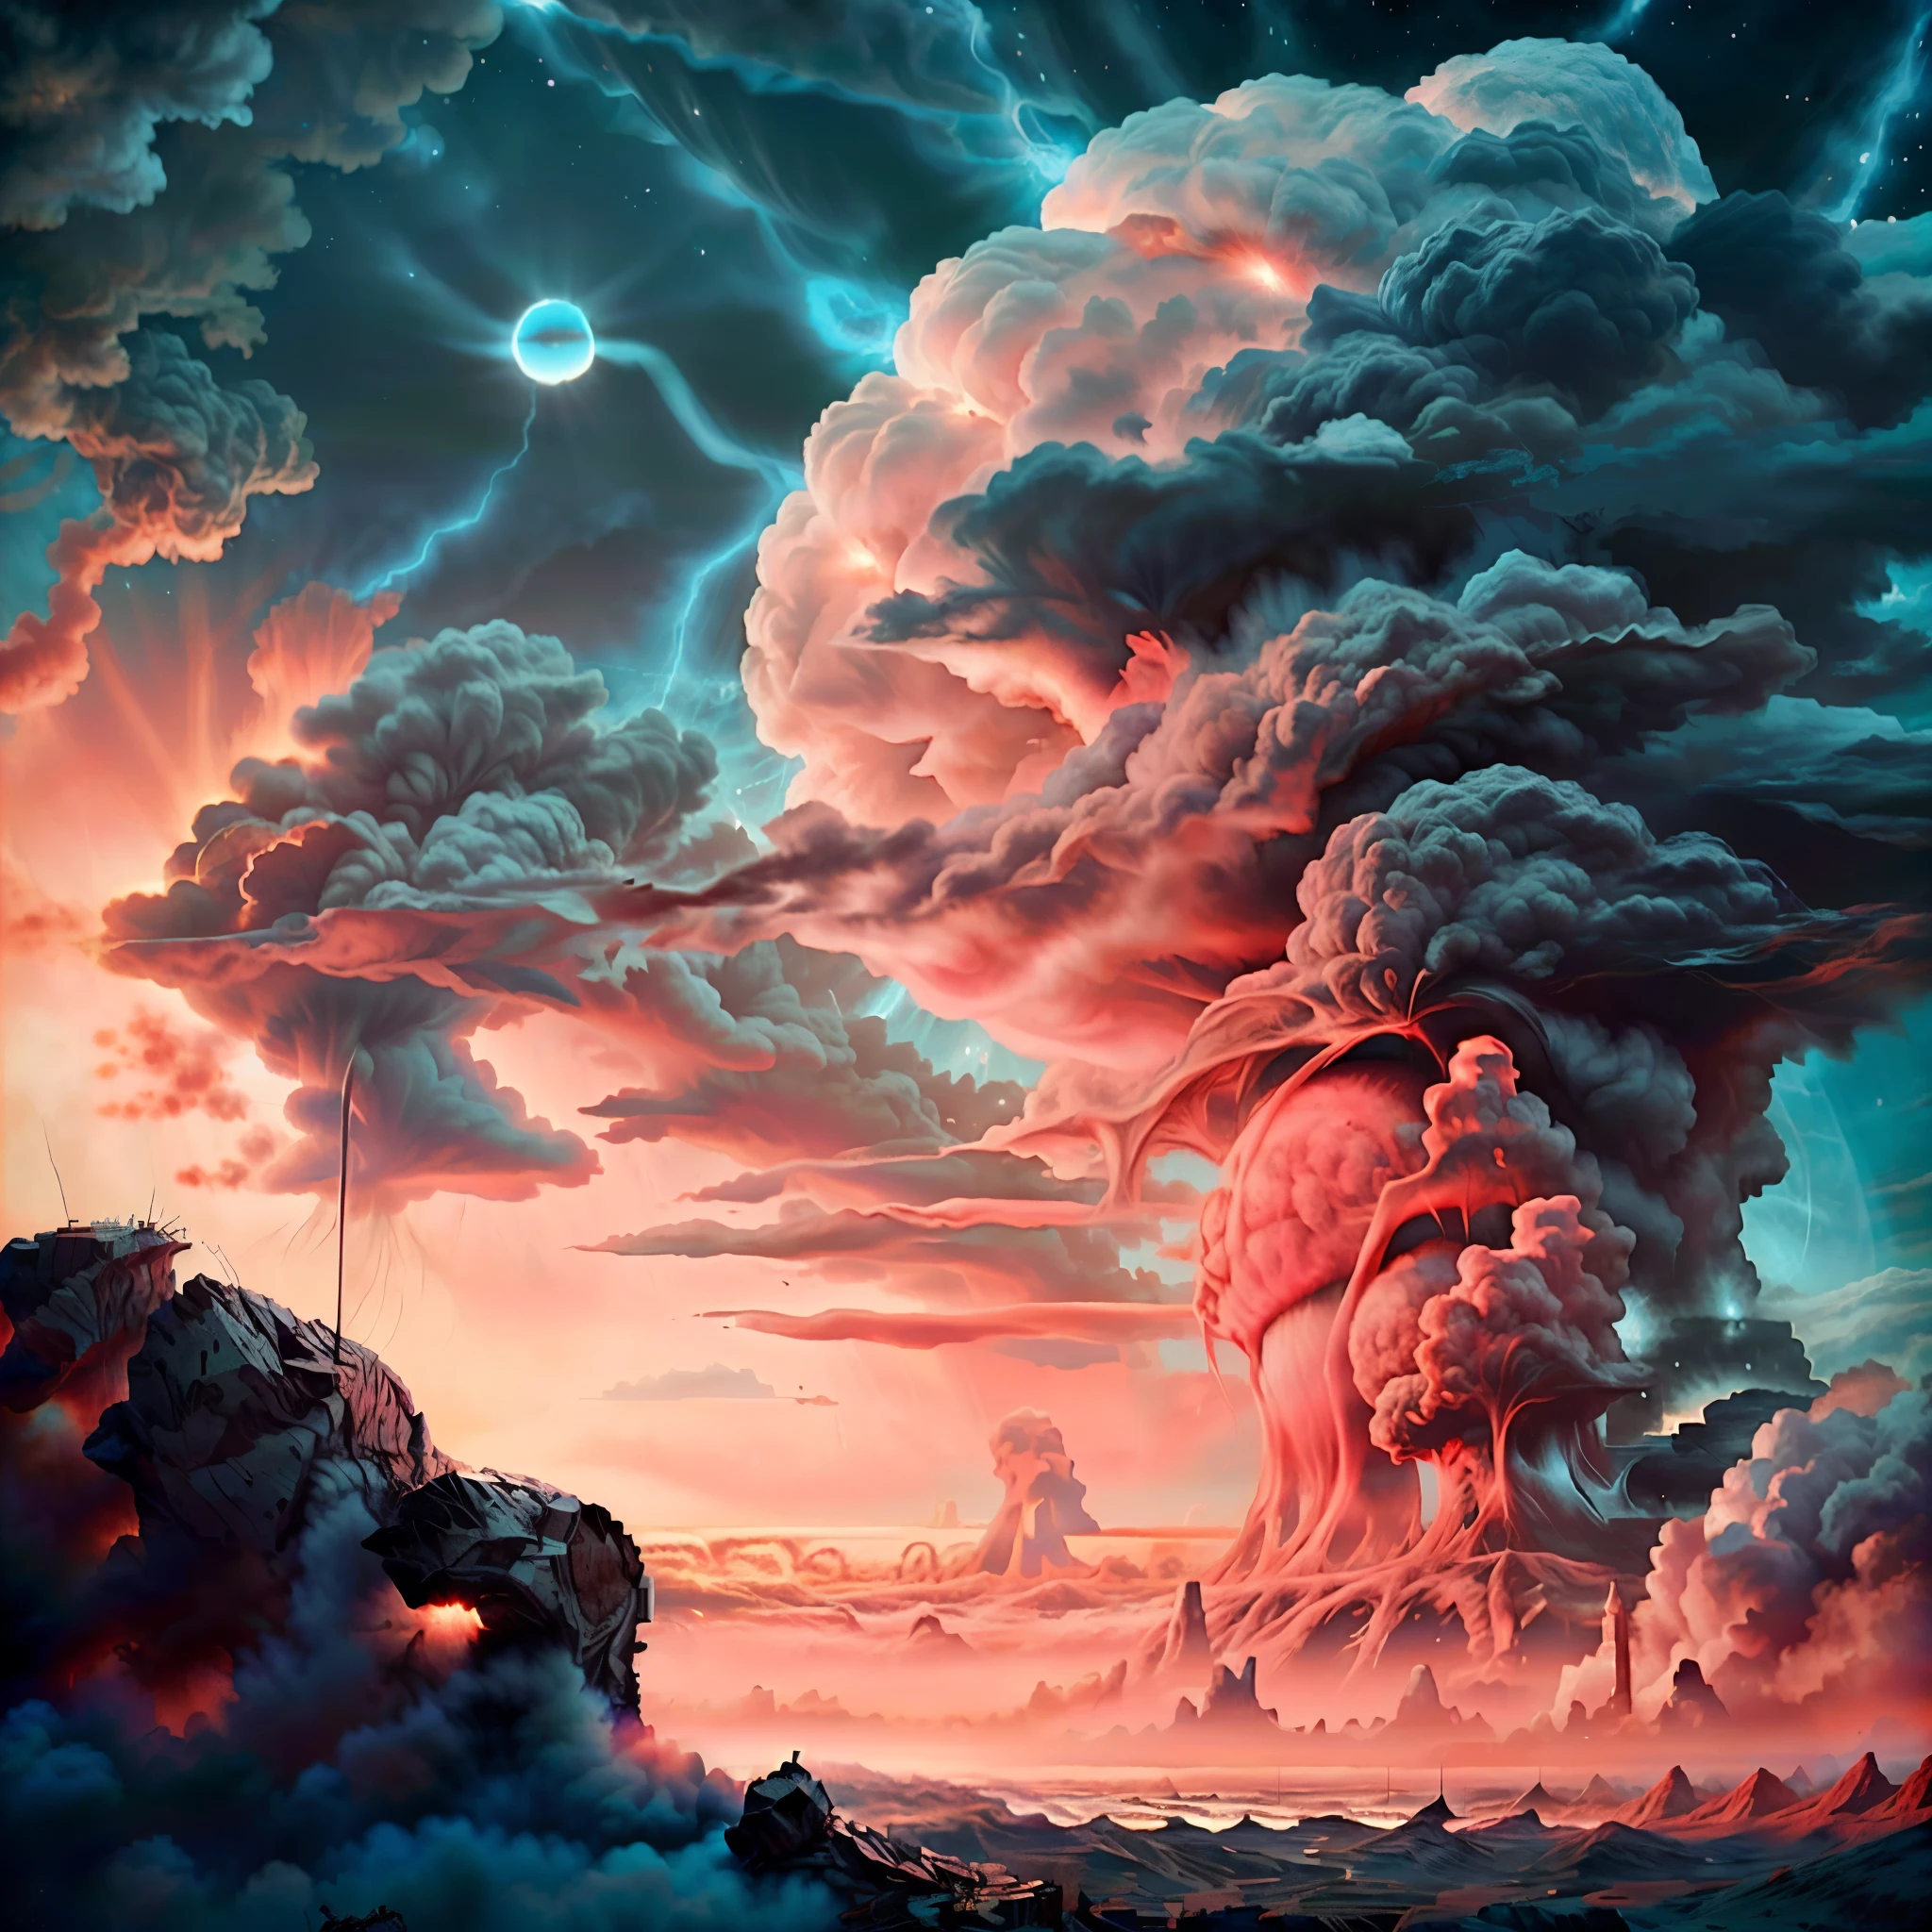 核爆的超現實特寫, 天上有一朵大雲, 觀念藝術, 核雲, 核爆描繪了天空, 傑作, 現實主義, 廢墟, 虹彩效應中的輻射